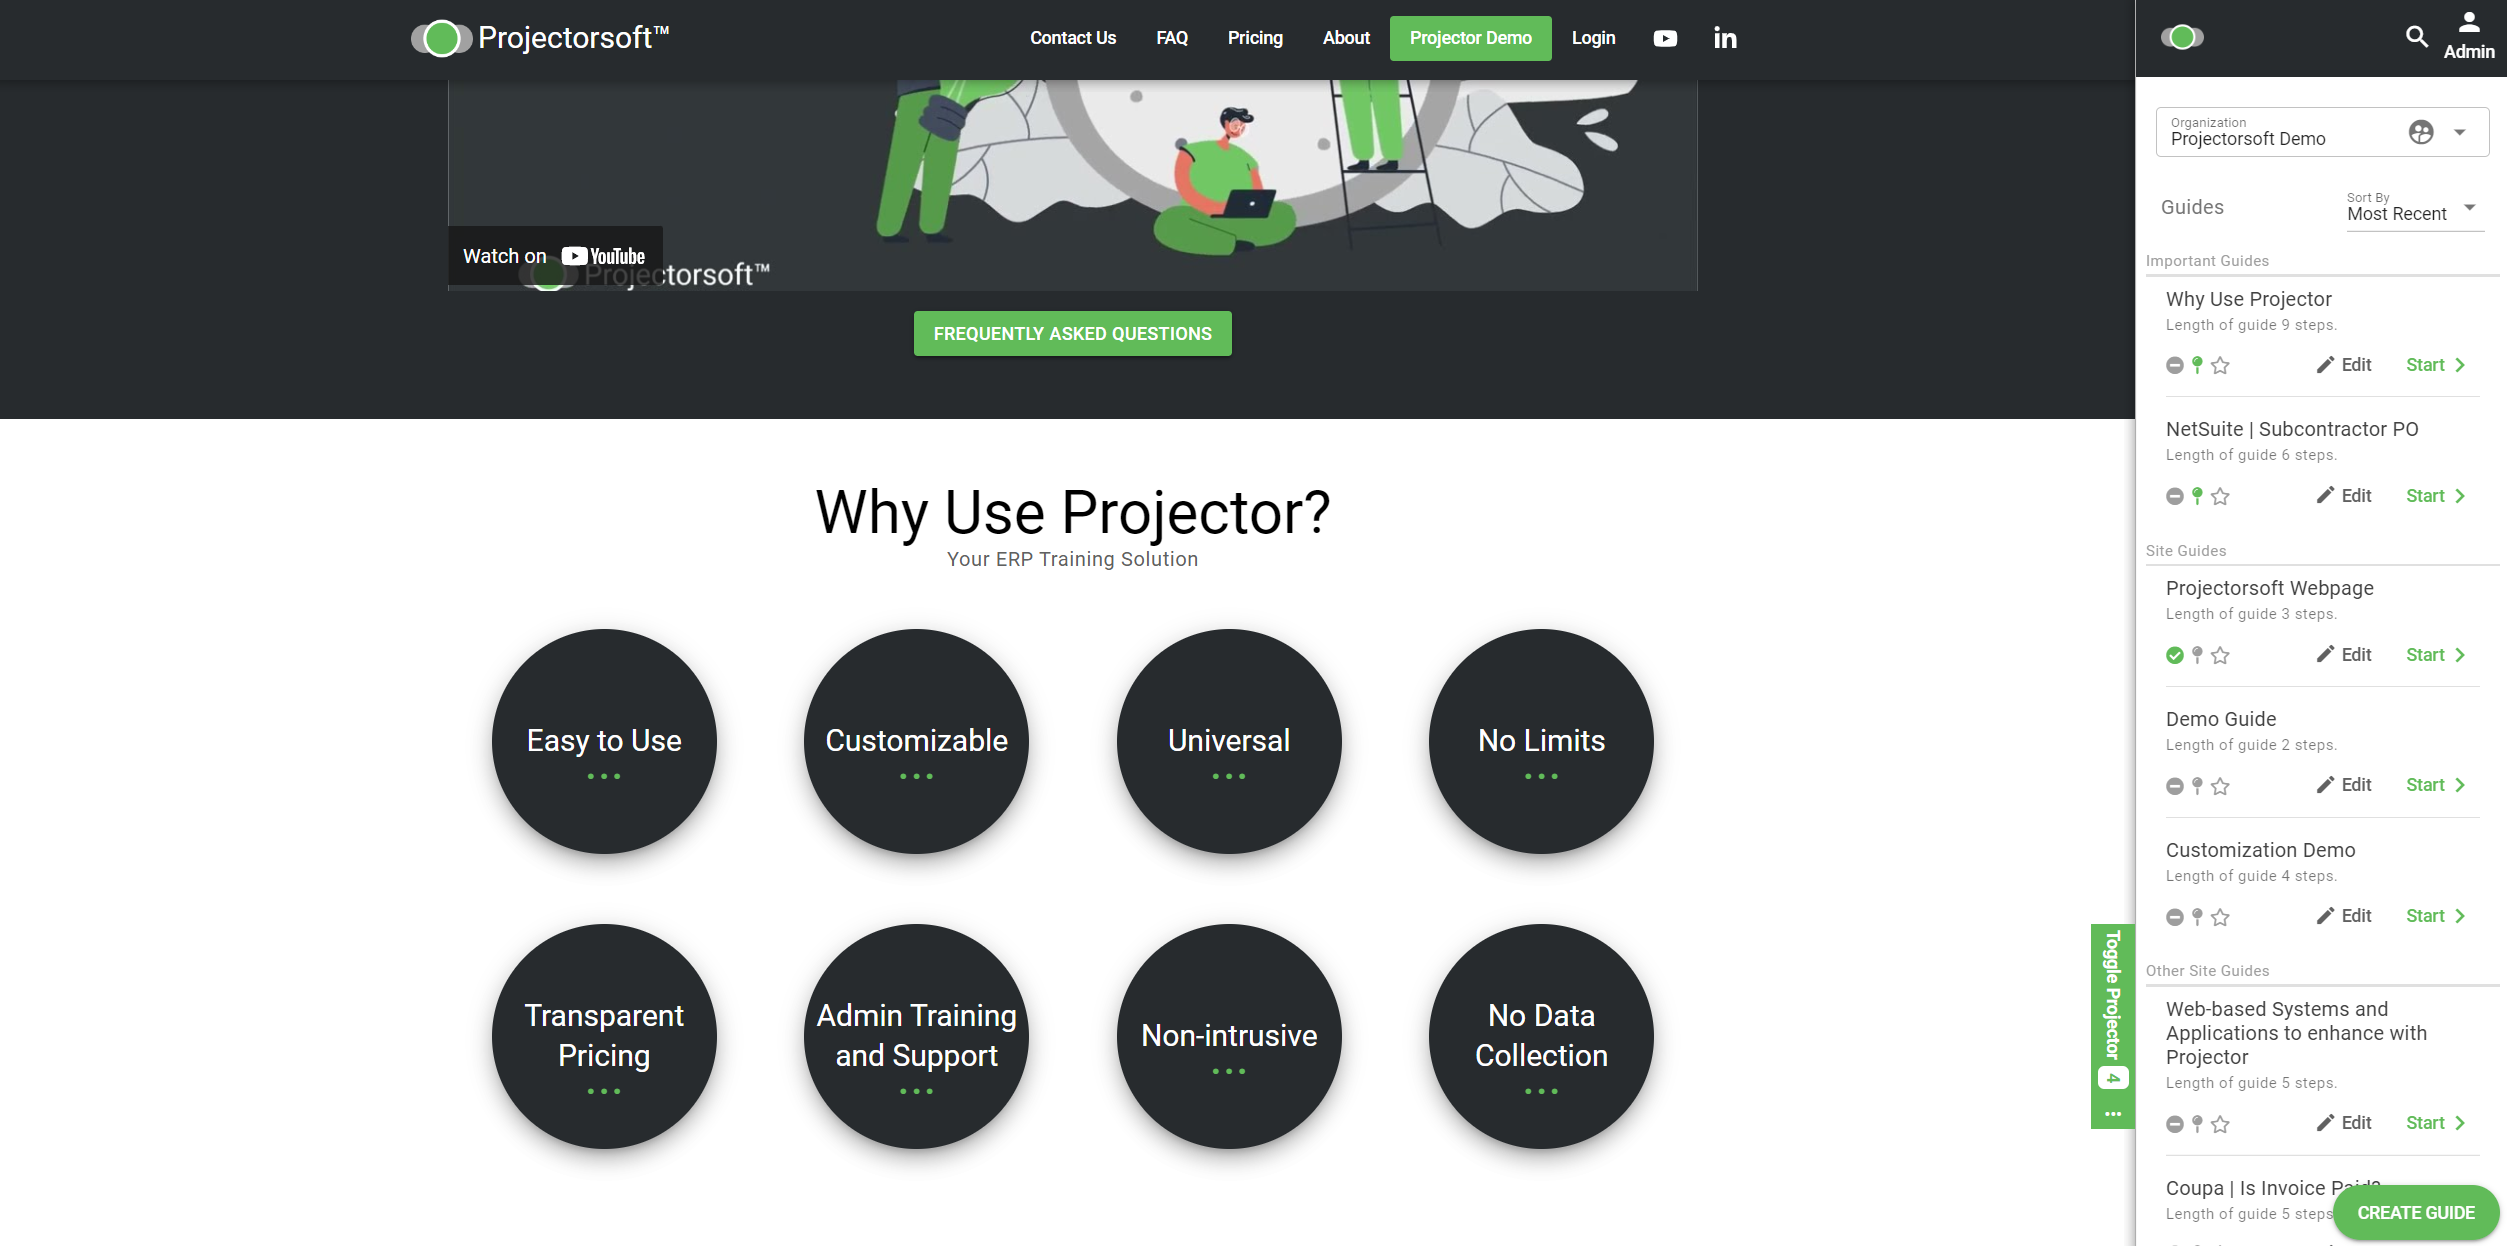 Projectorsoft - vendor materials